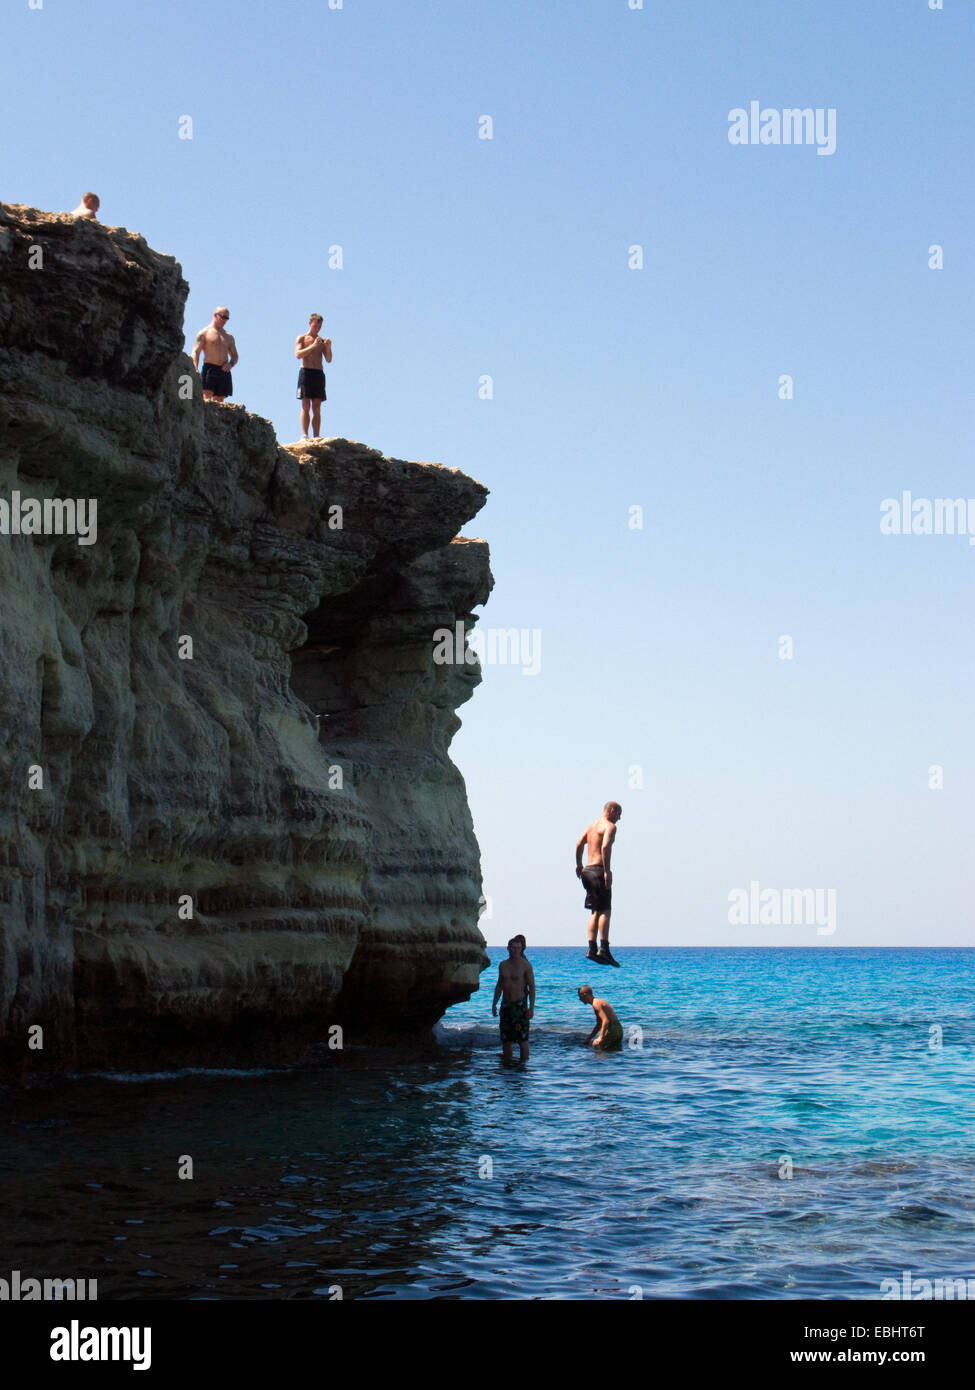 Die Grotten, an Cavo Greco, nicht weit von Ayia Napa, Zypern, ist ein beliebter Ort für Touristen. Sie springen von den Klippen ins Meer. Stockfoto